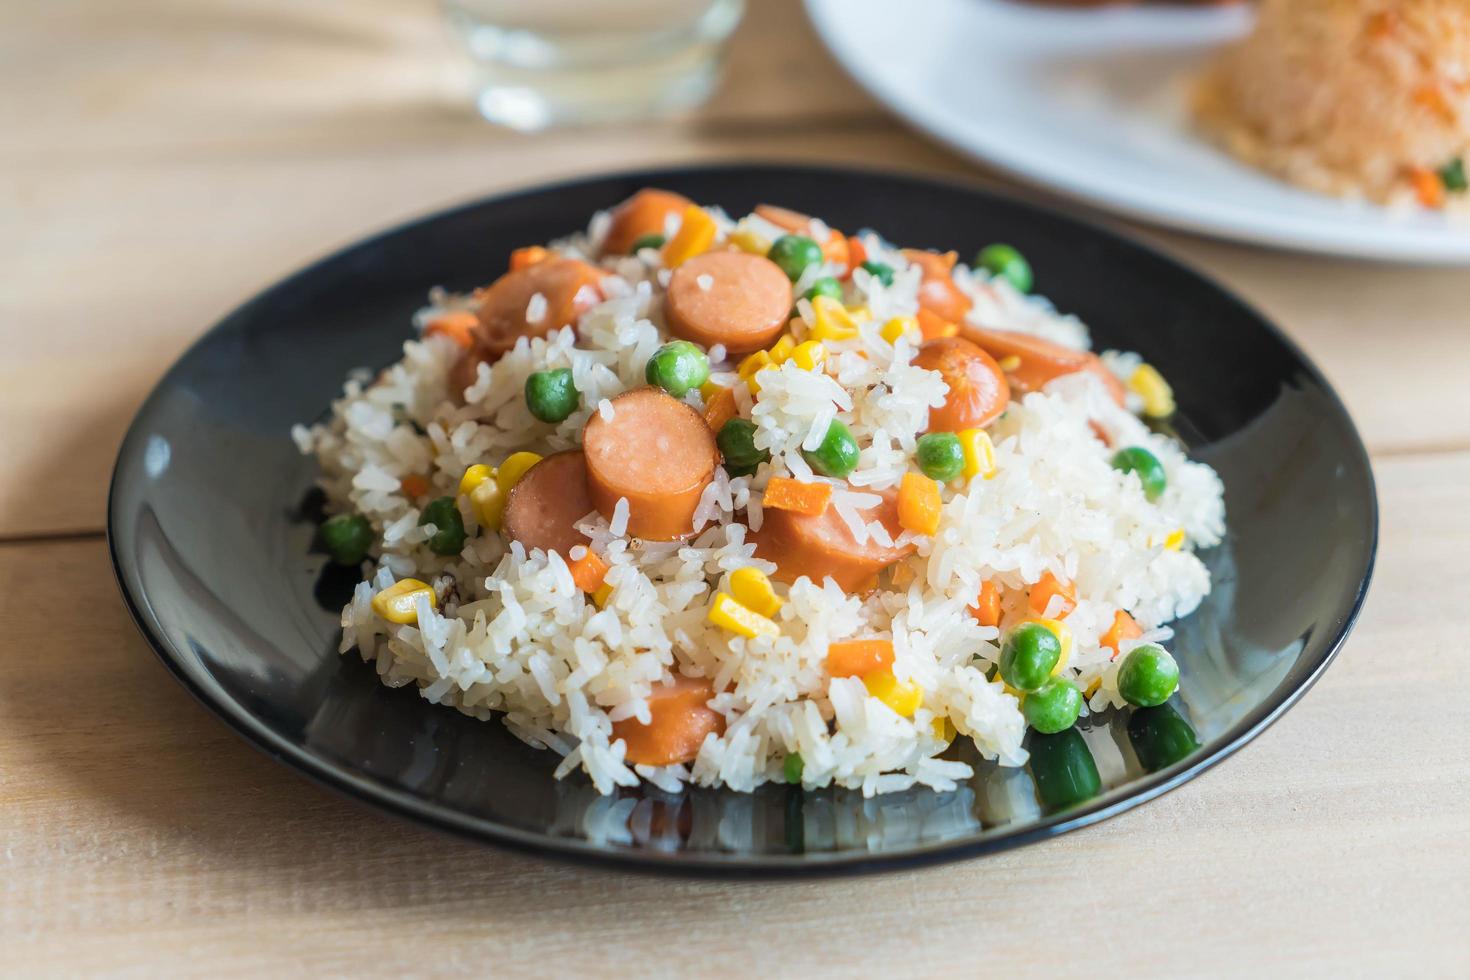 arroz frito com legumes e salsicha foto